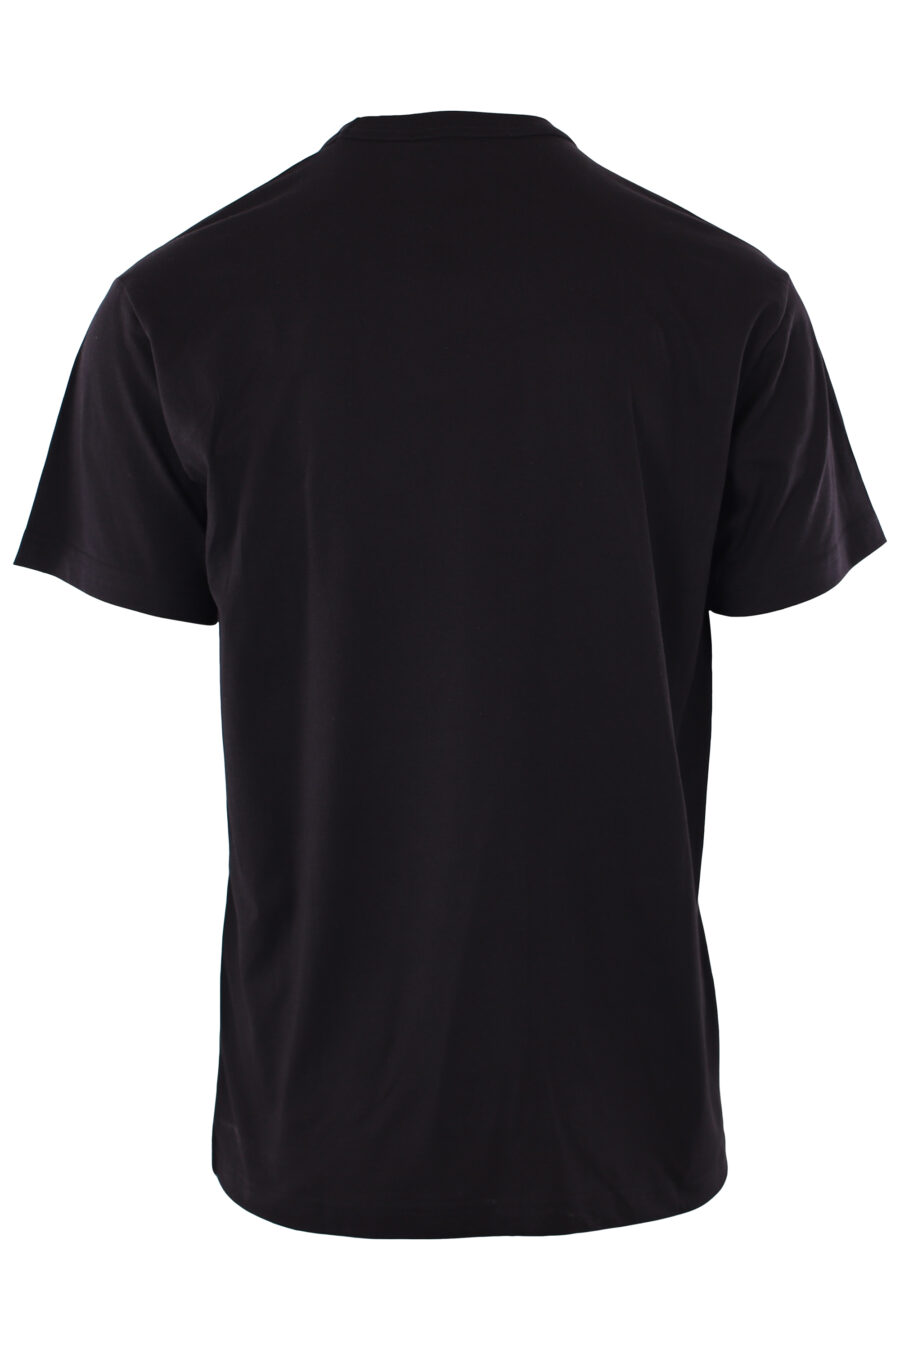 T-shirt preta com logótipo diagonal branco - IMG 6567